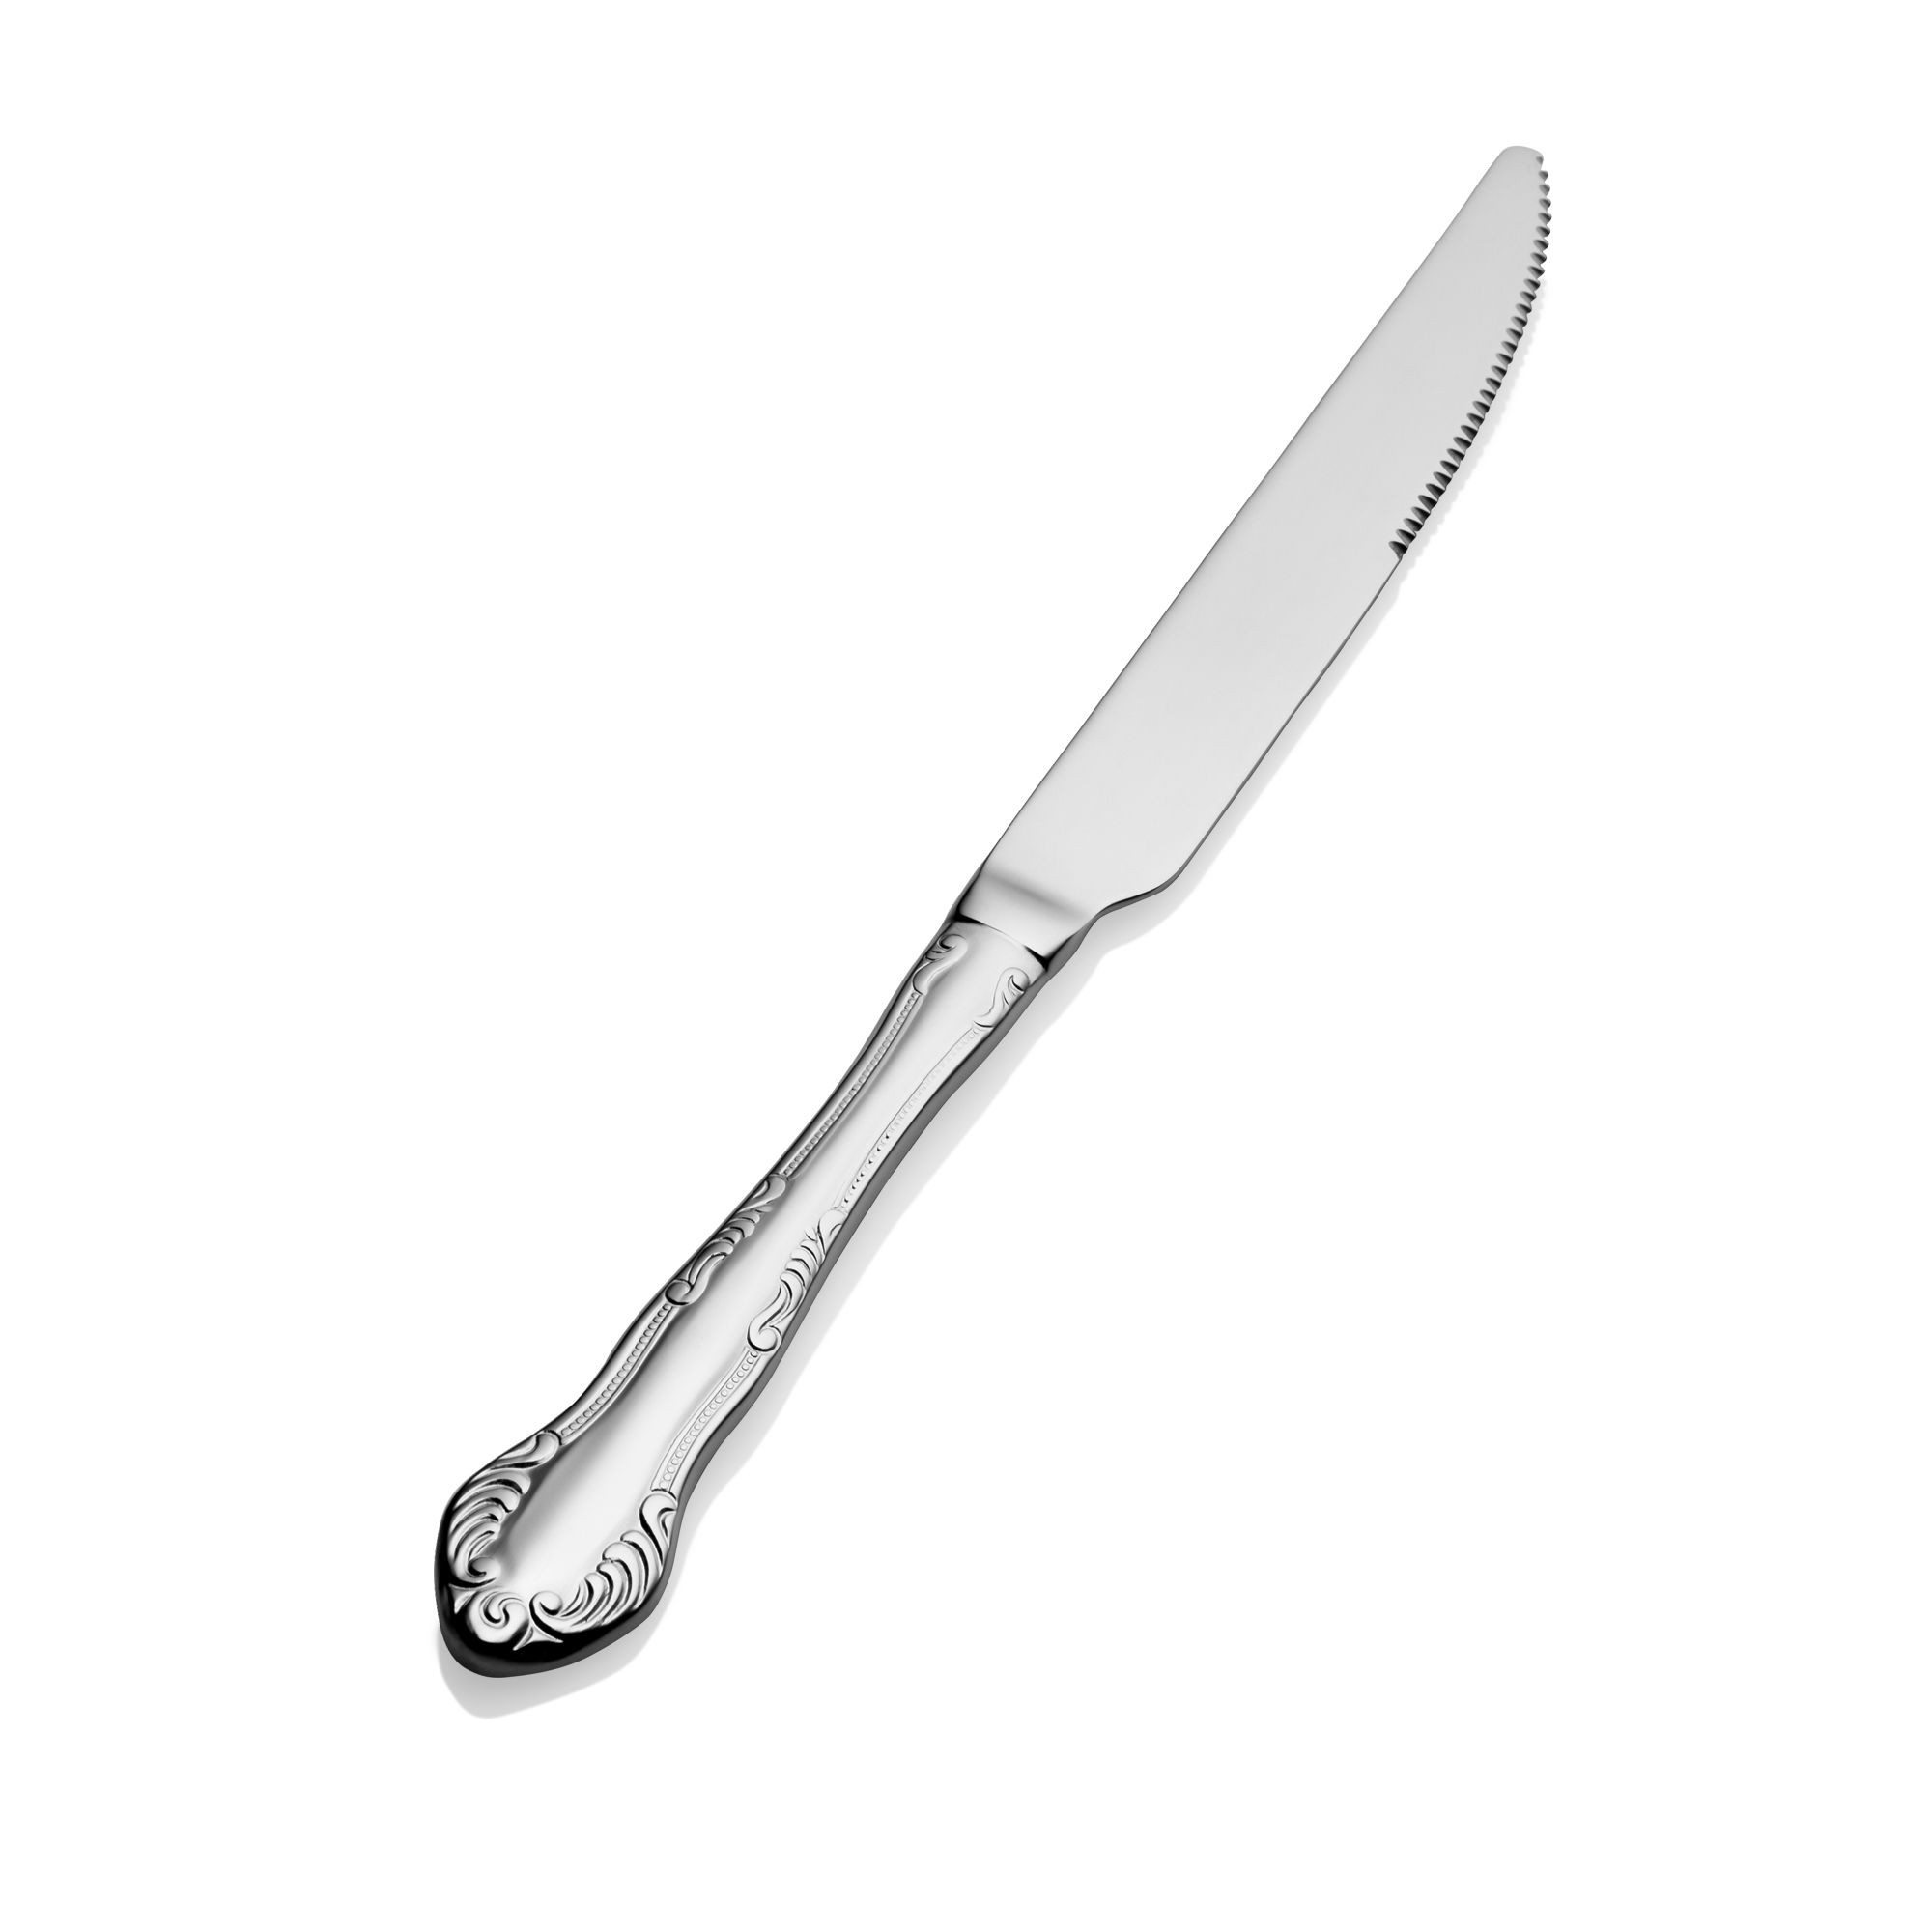 Bon Chef S2512 Elegant 18/8 Stainless Steel European Solid Handle Dinner Knife